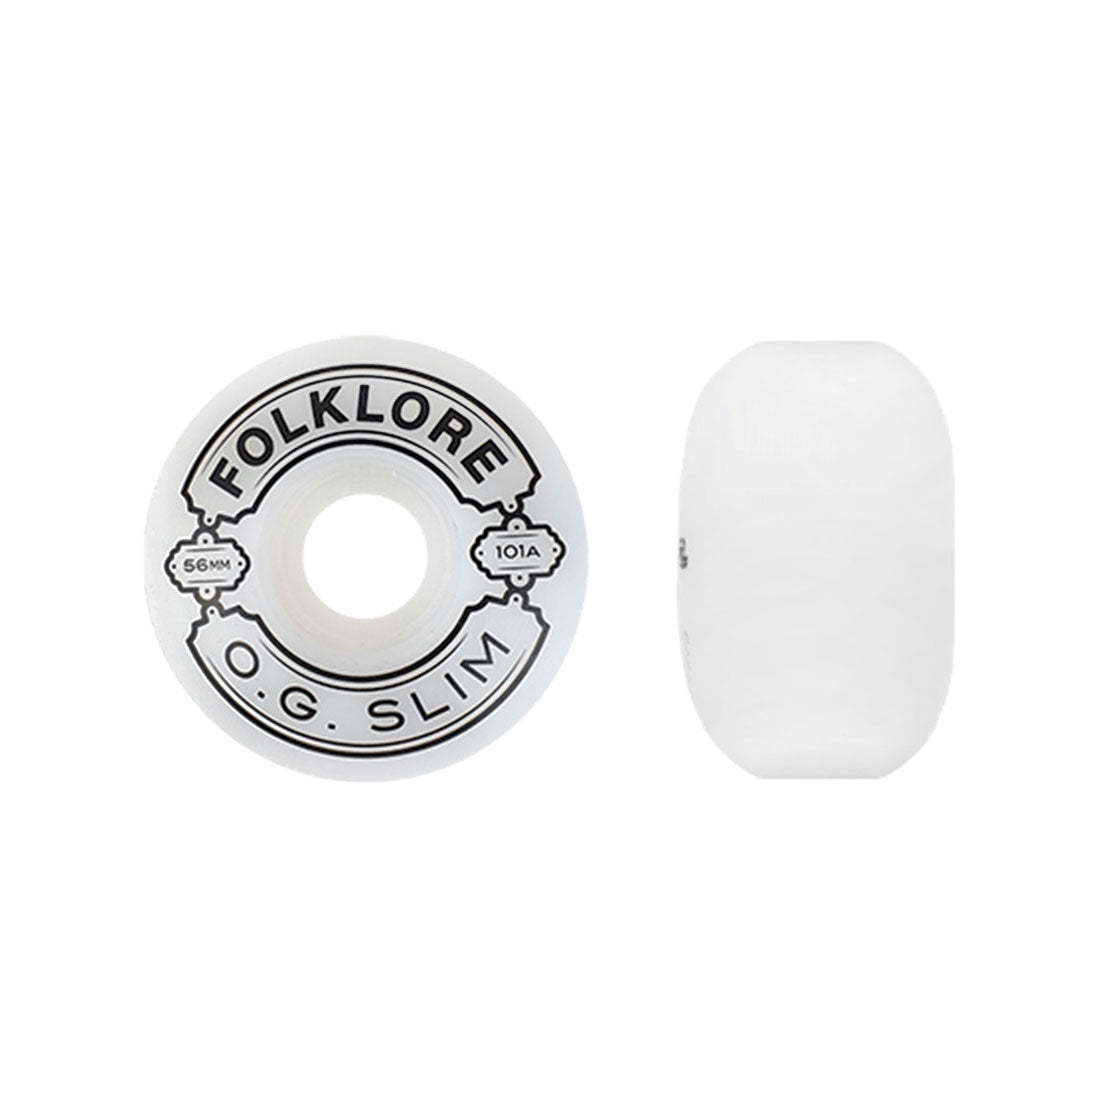 Folklore OG Slims 54mm/101a 4pk - White Skateboard Wheels